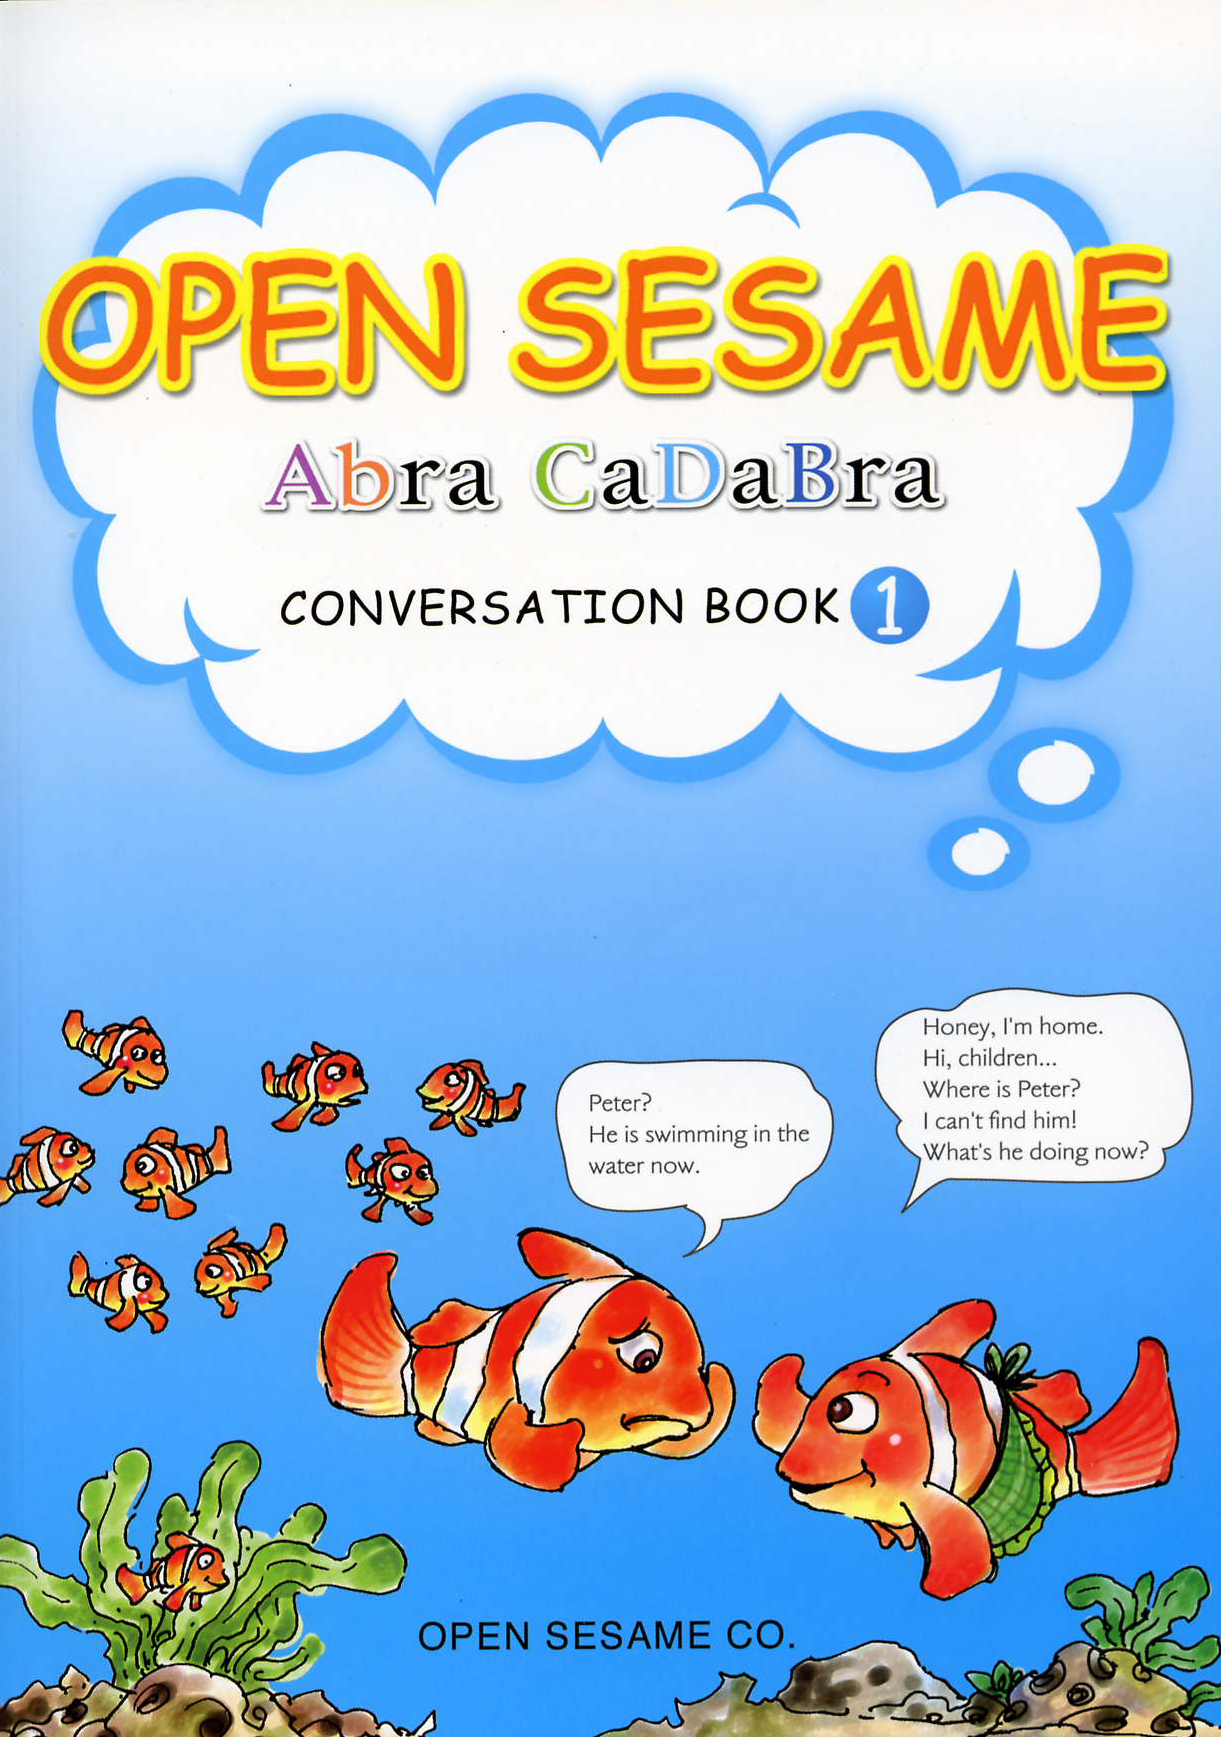  Abracadabra Conversation Book1 